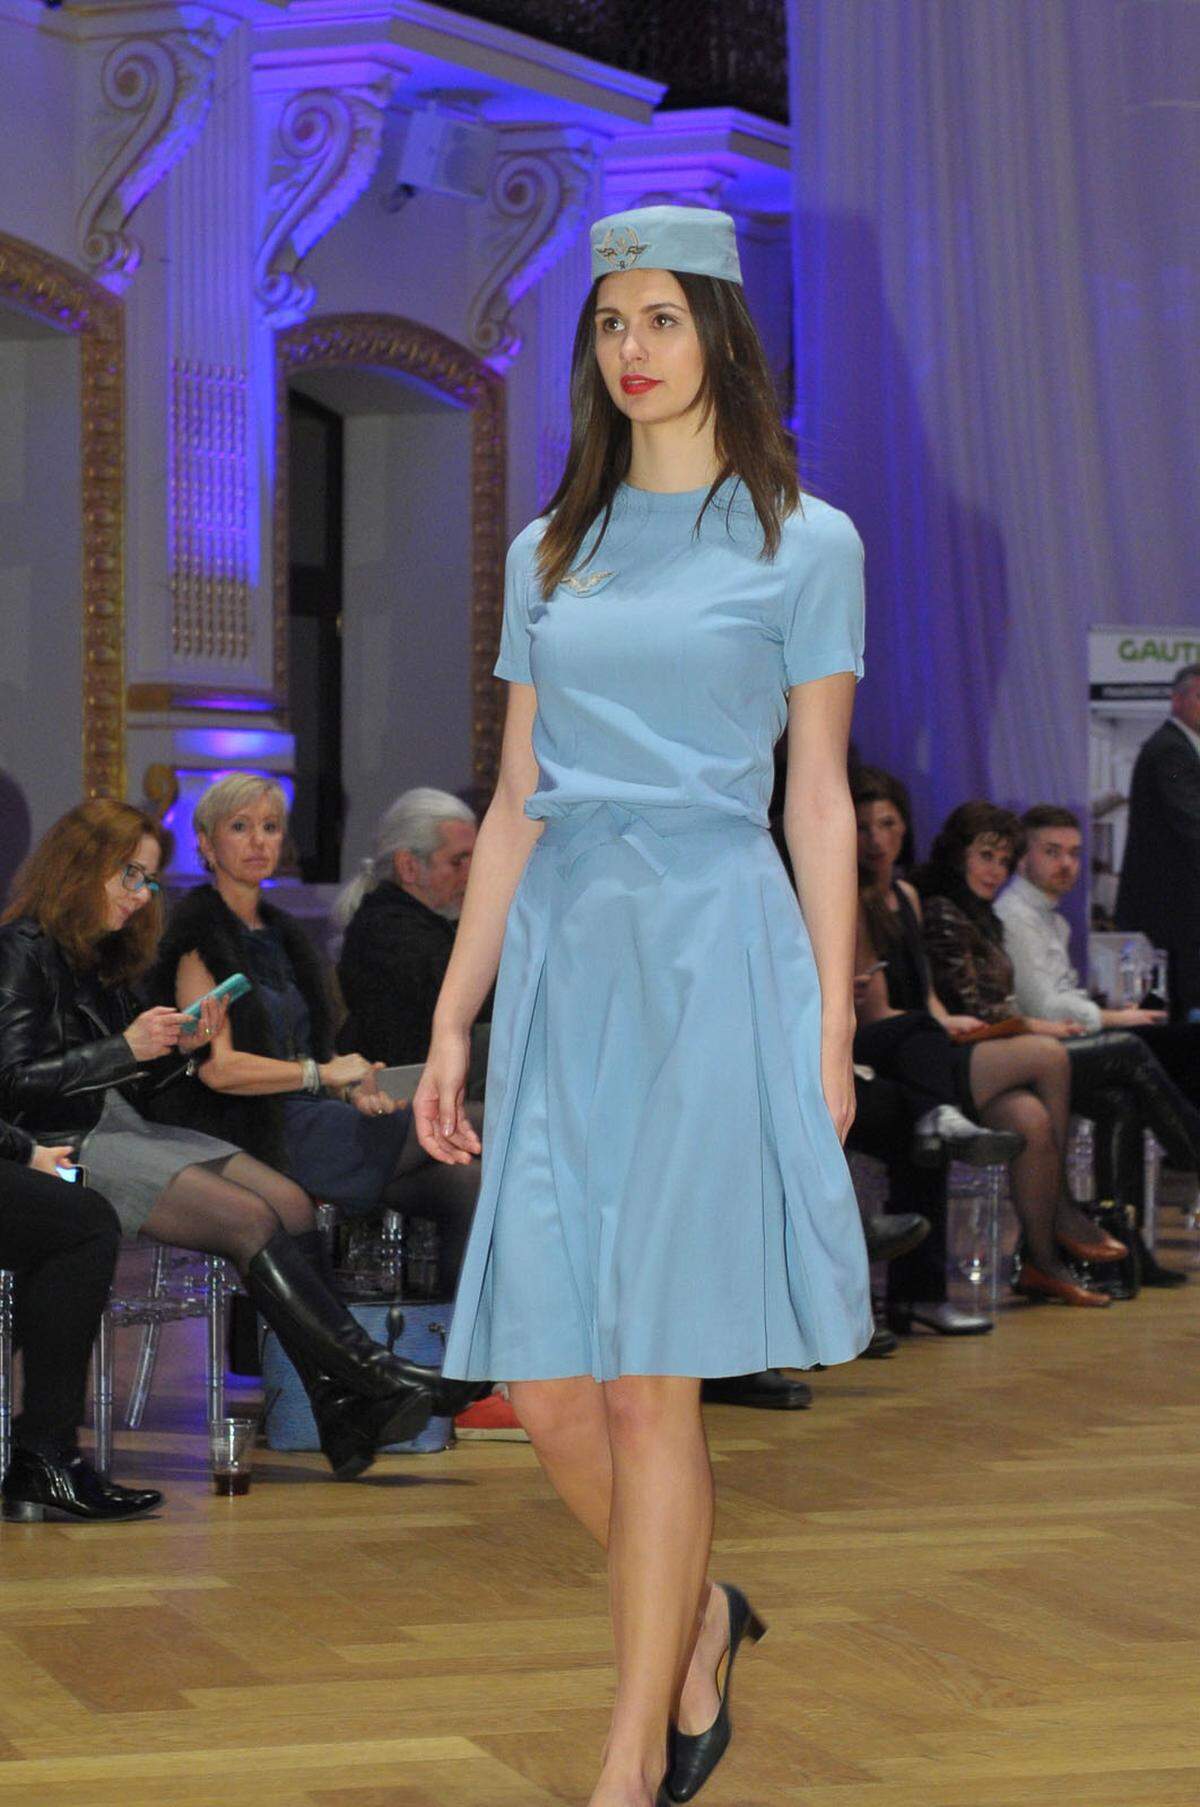 Große medialer Beachtung fand die neue Uniform 1963. Kein Wunder: Das Modehaus Christian Dior unter der kreativen Leitung von Marc Bohan zeichnete für die eleganten Uniformen verantwortlich. Das zartblaue Sommerkleid wurde mit einem Pillbox-Hut kombiniert.